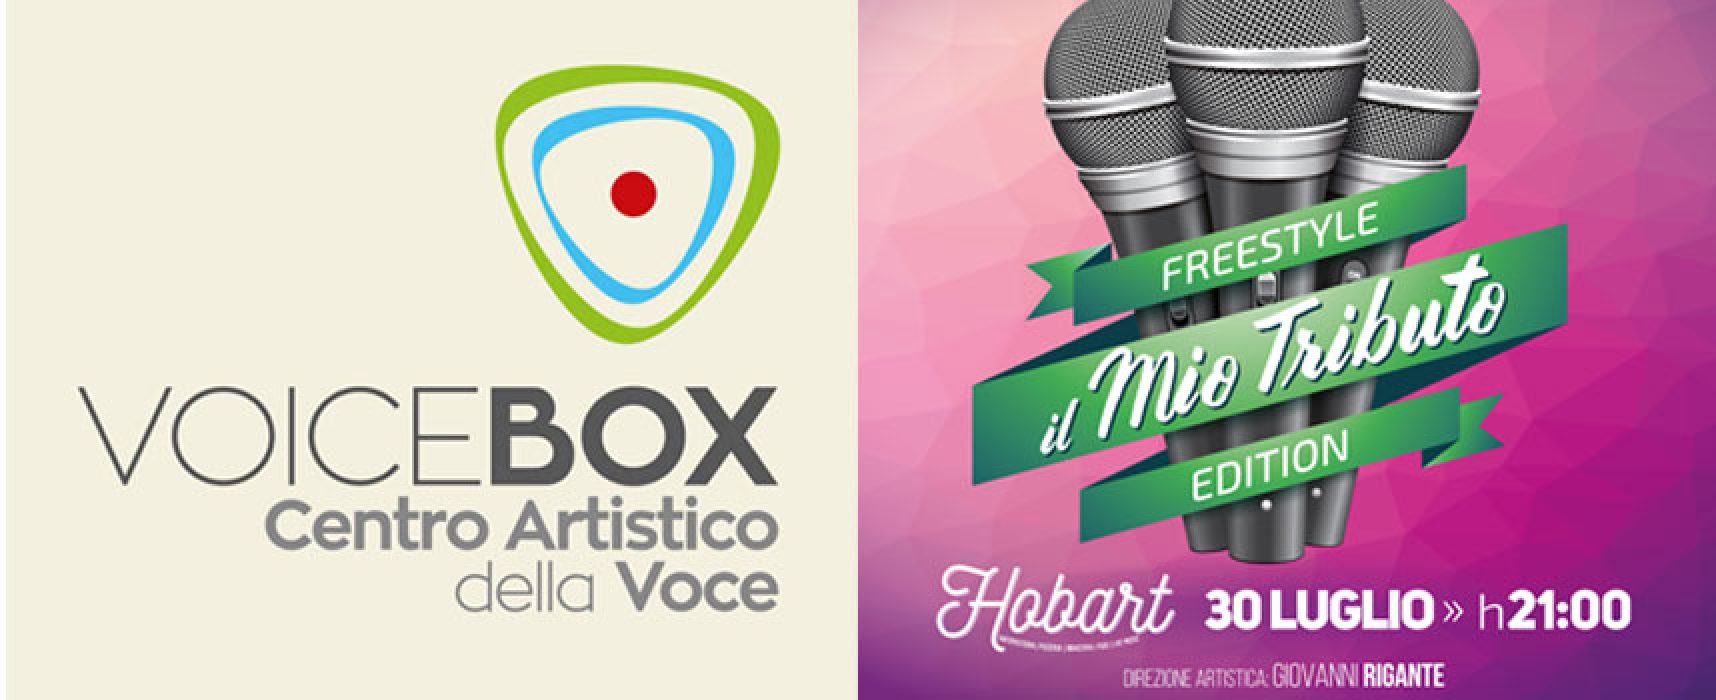 L’accademia Voice Box all’Hobart per una serata di grande musica